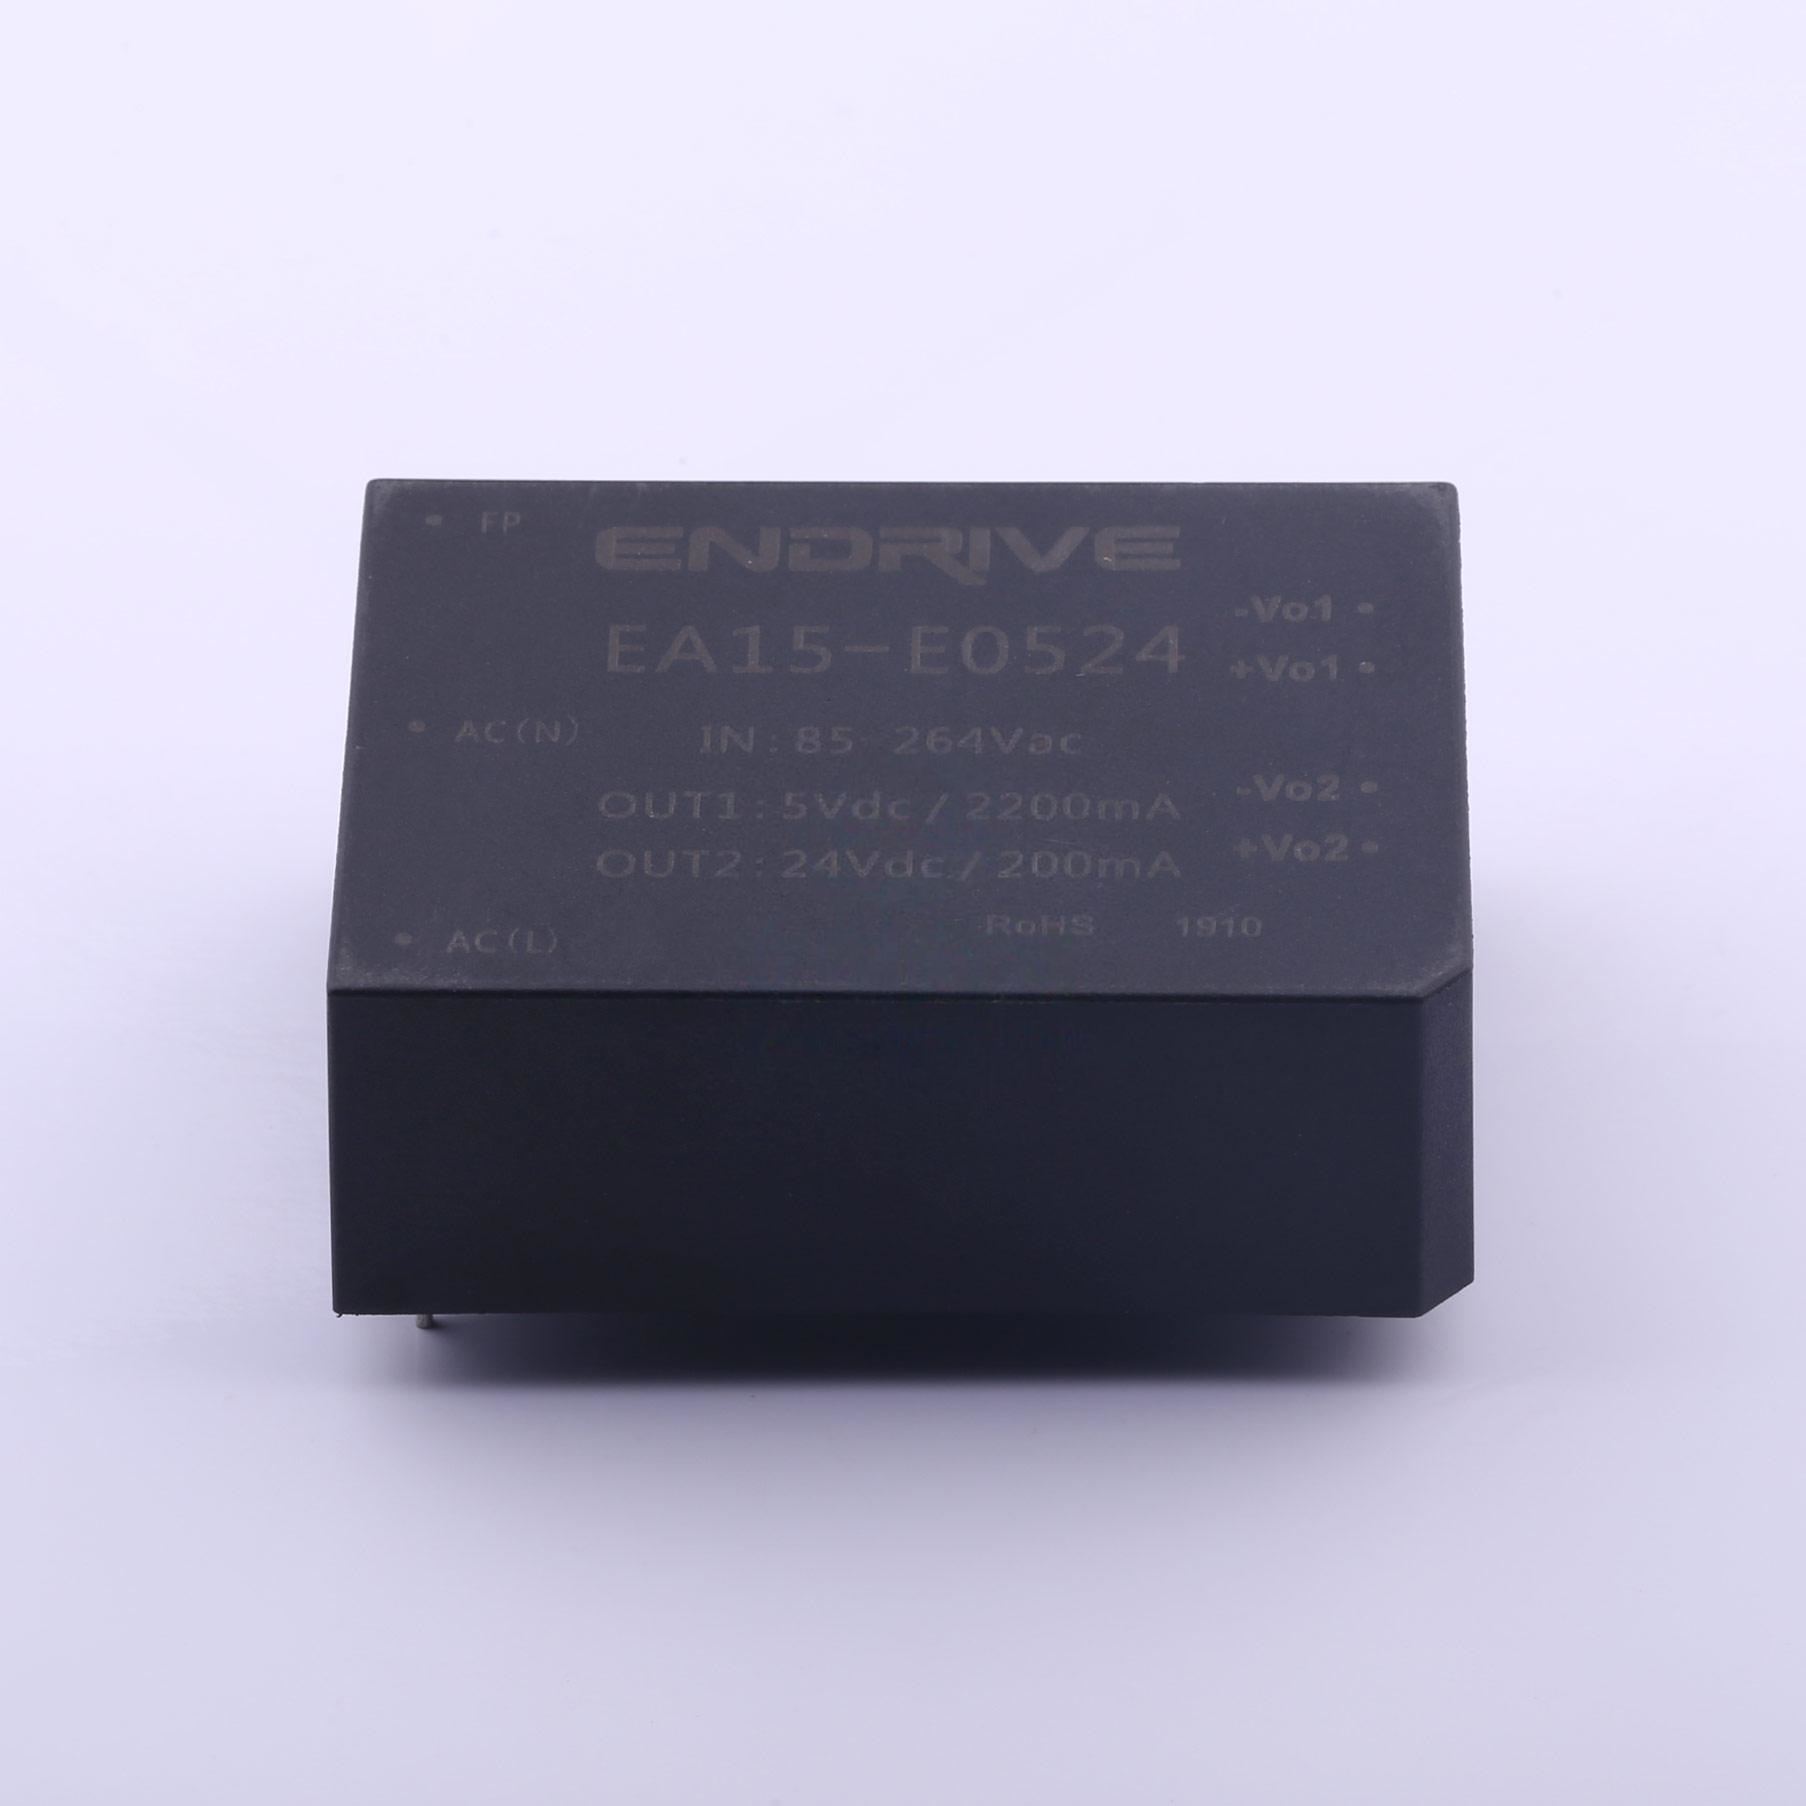 EA15-E0524